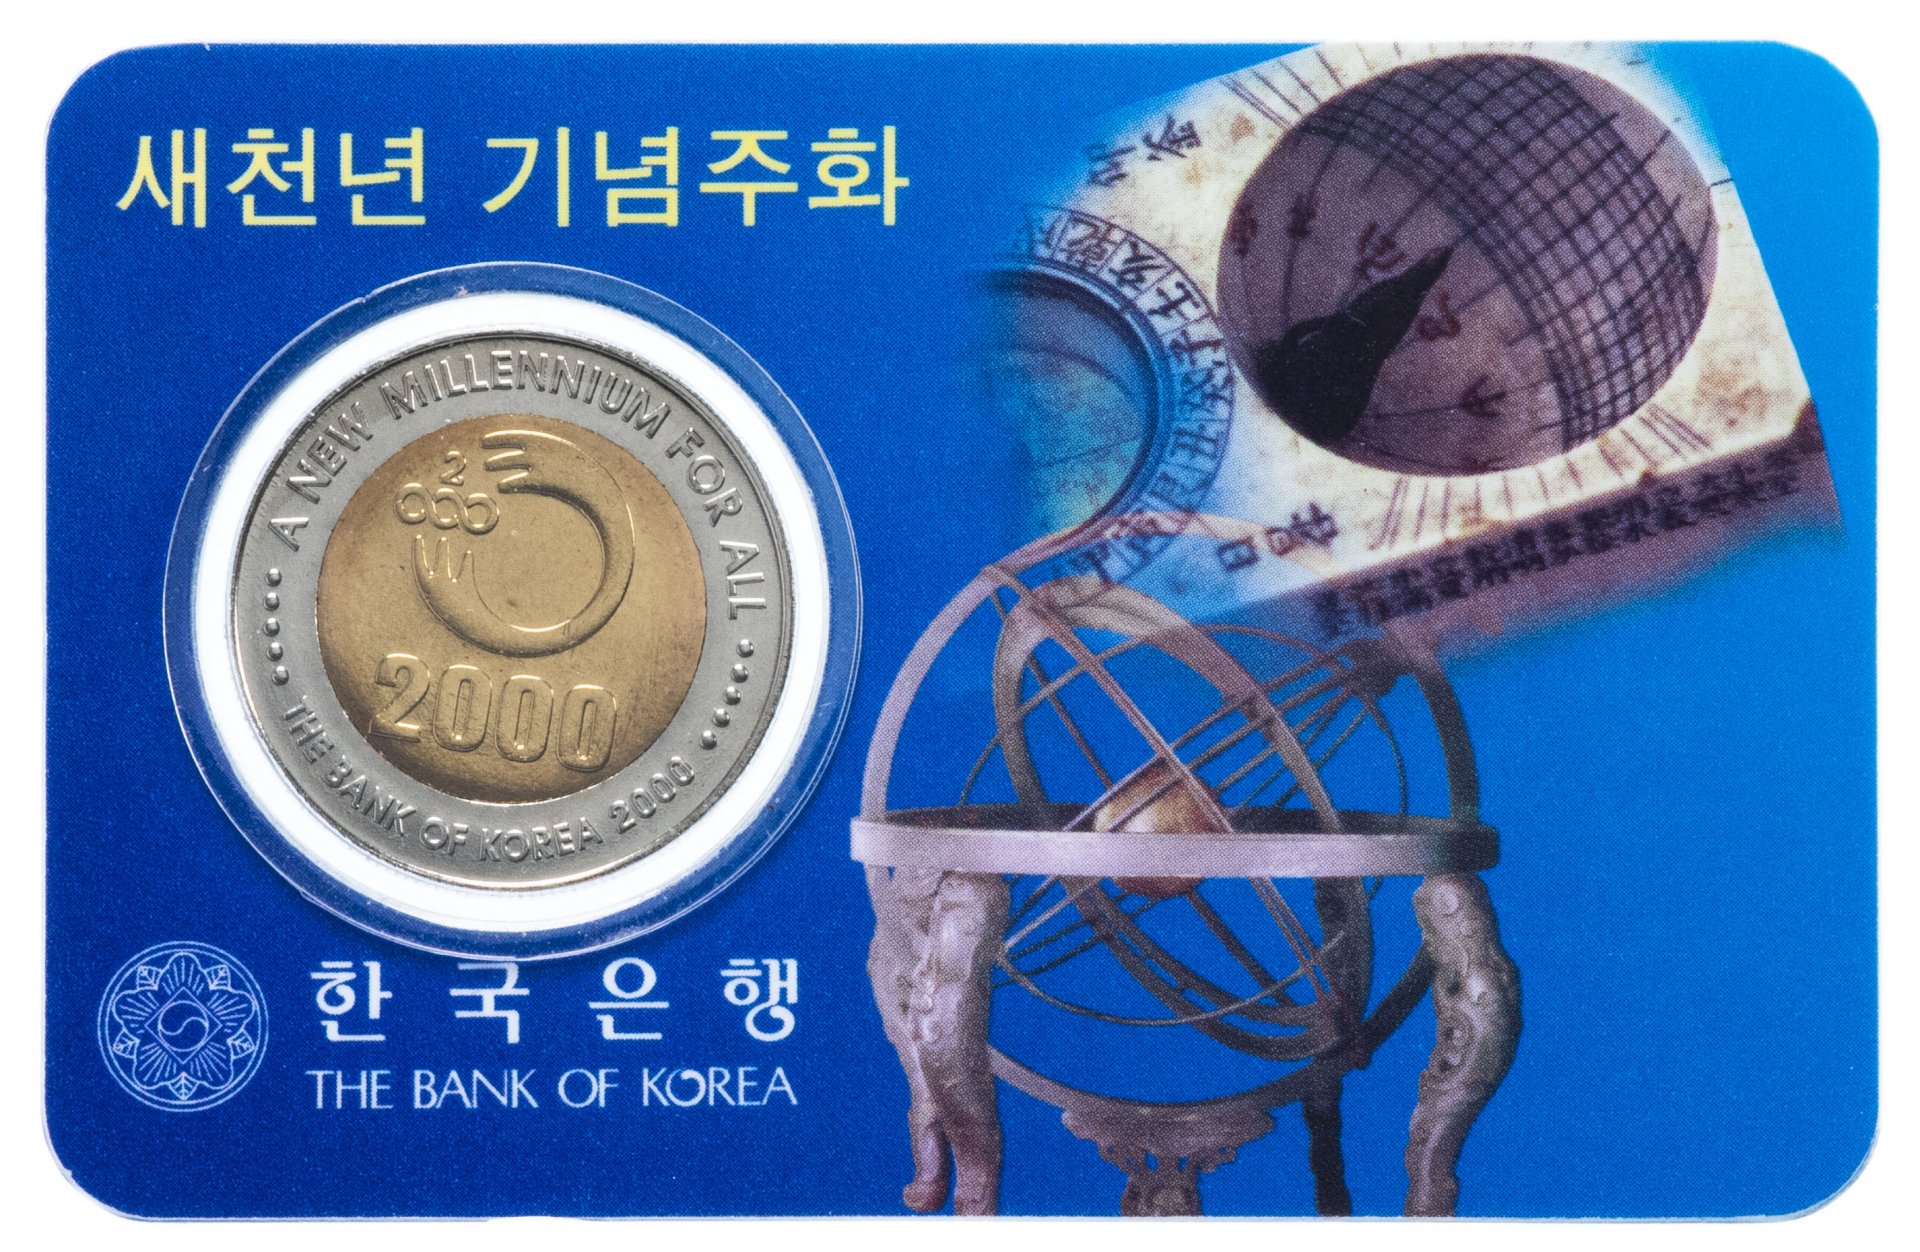 2000 вон в рублях на сегодня. Монеты Южной Кореи. Монеты Южная Корея 2000 г. Монеты вон Южной Кореи. Банкнота 2000 вон 2018 года Южная Корея.